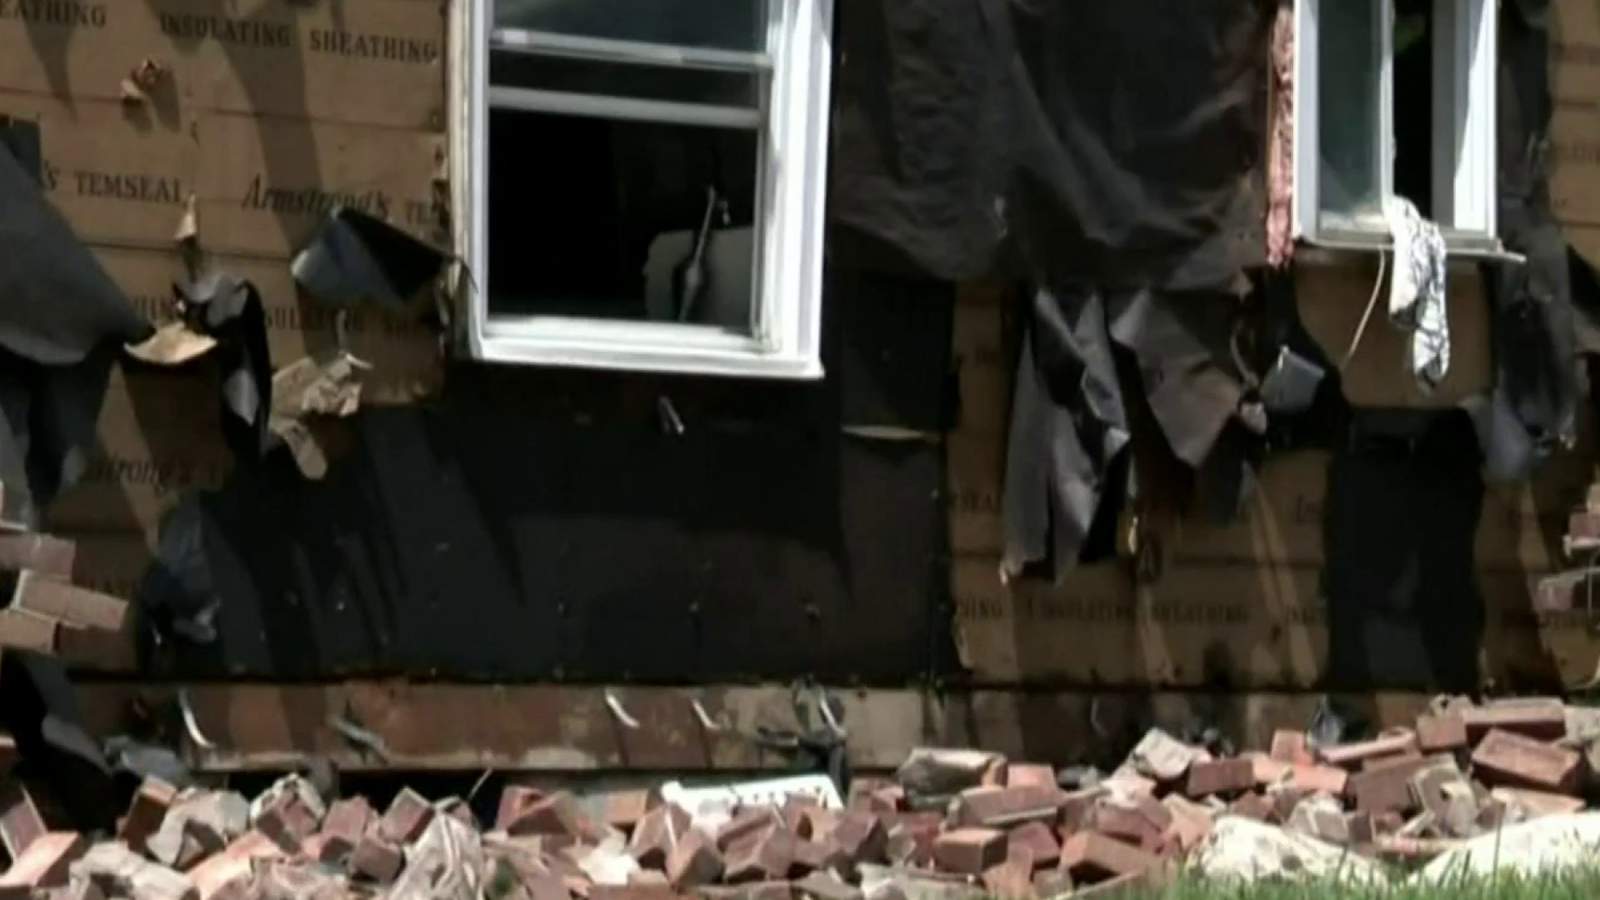 Woman survives Birmingham house explosion